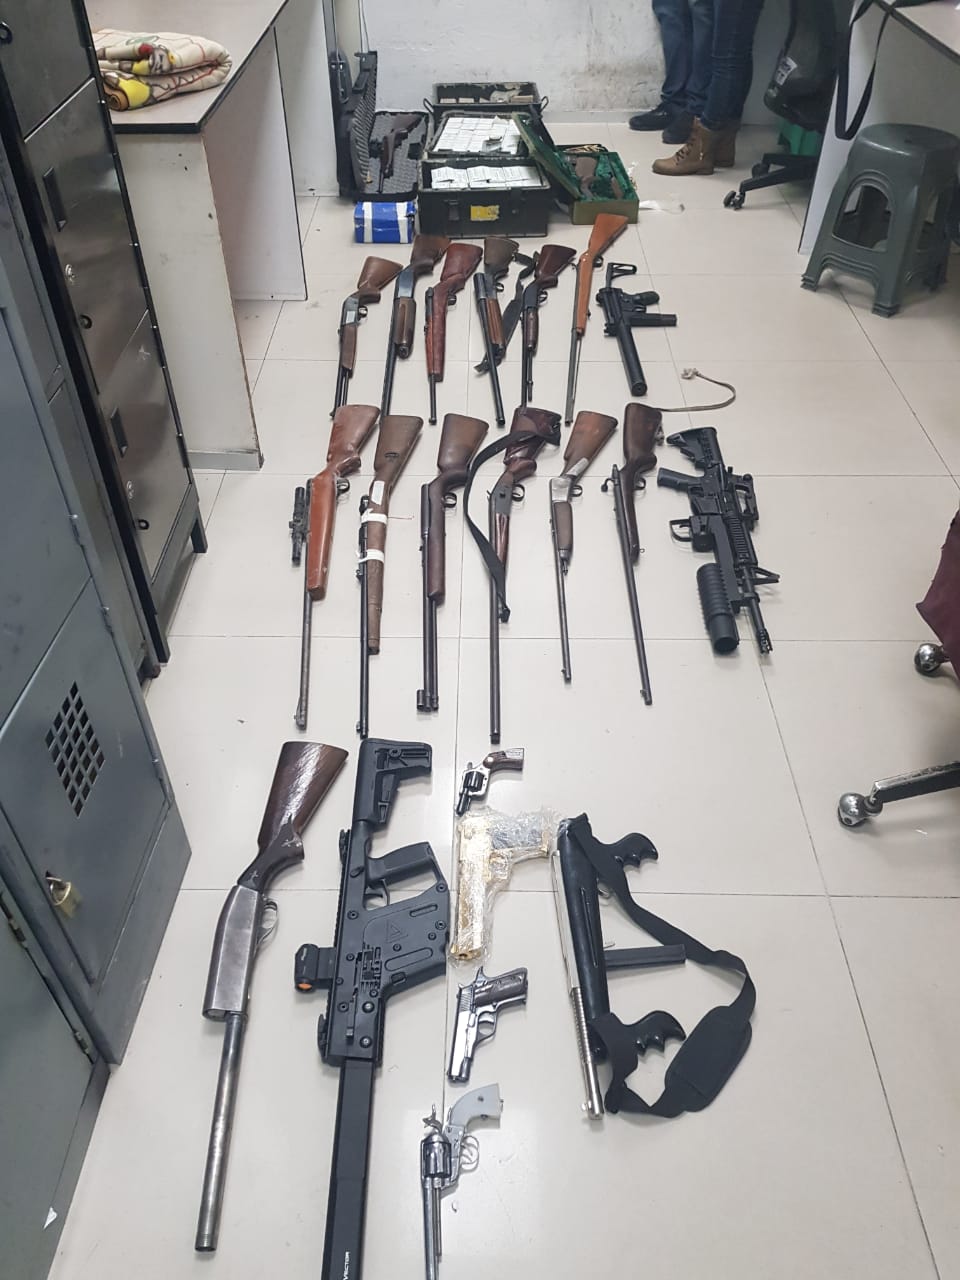 Catea FGJEM un inmueble en Tecámac en donde fueron localizadas 26 armas de fuego y más de 7 mil cartuchos útiles de diversos calibres